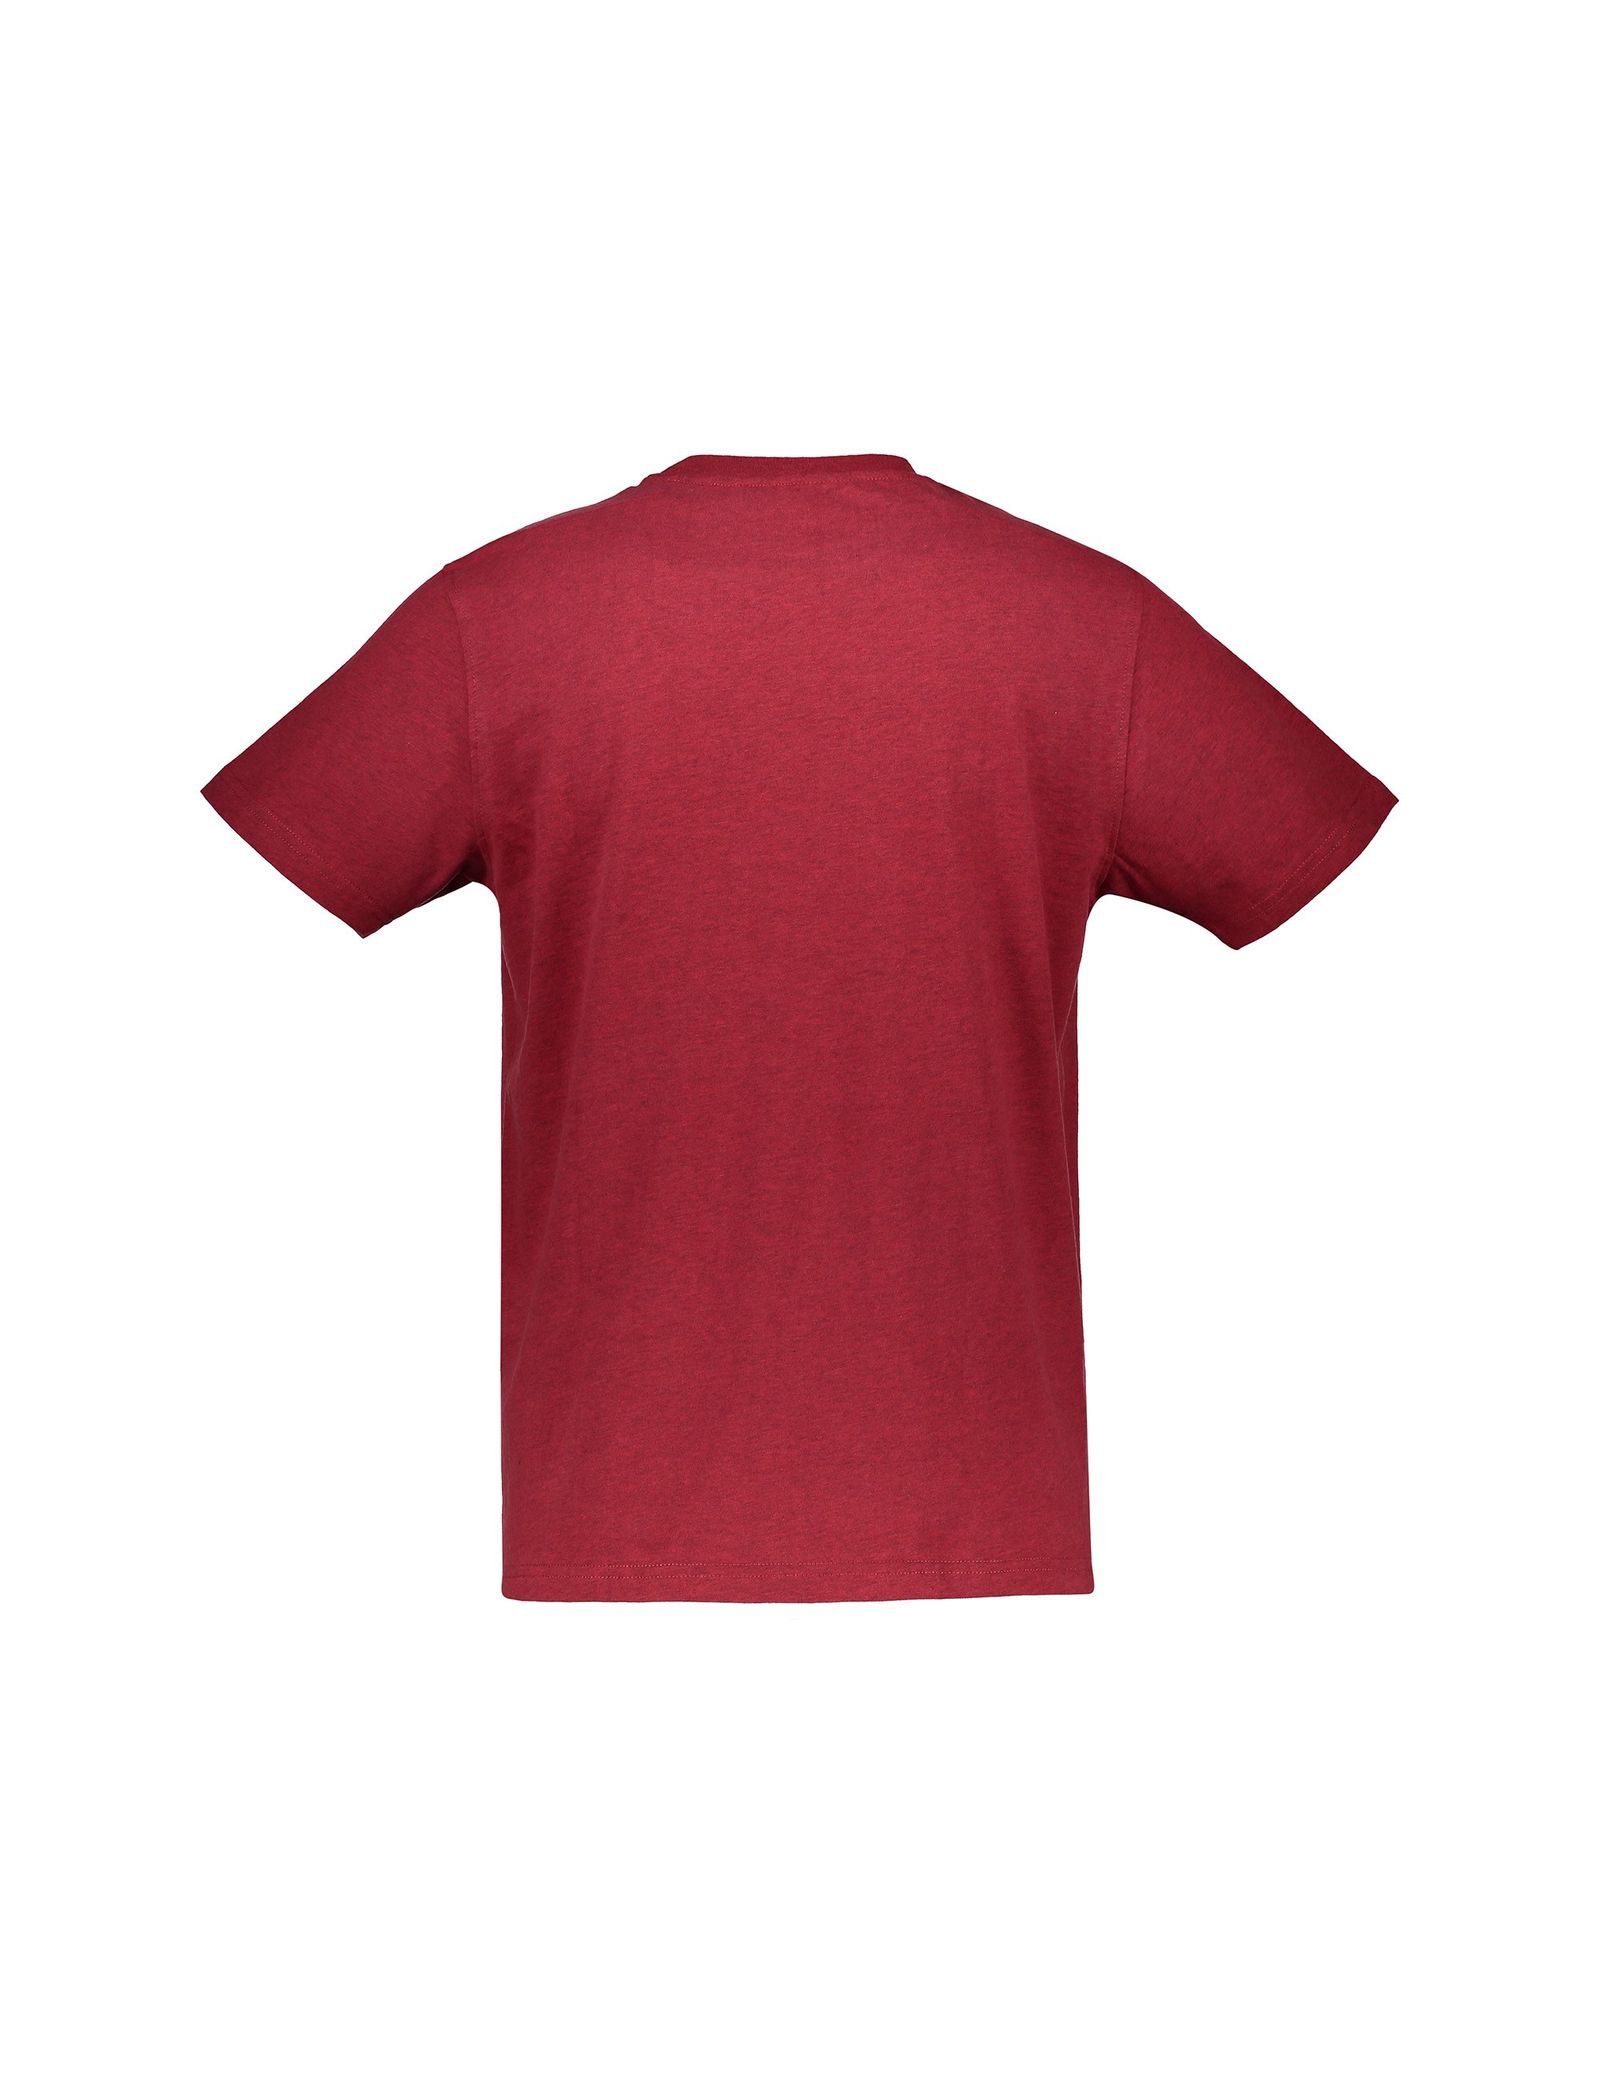 تی شرت و شلوارک راحتی نخی مردانه - مین نیو اینگلند - قرمز و آبي - 4